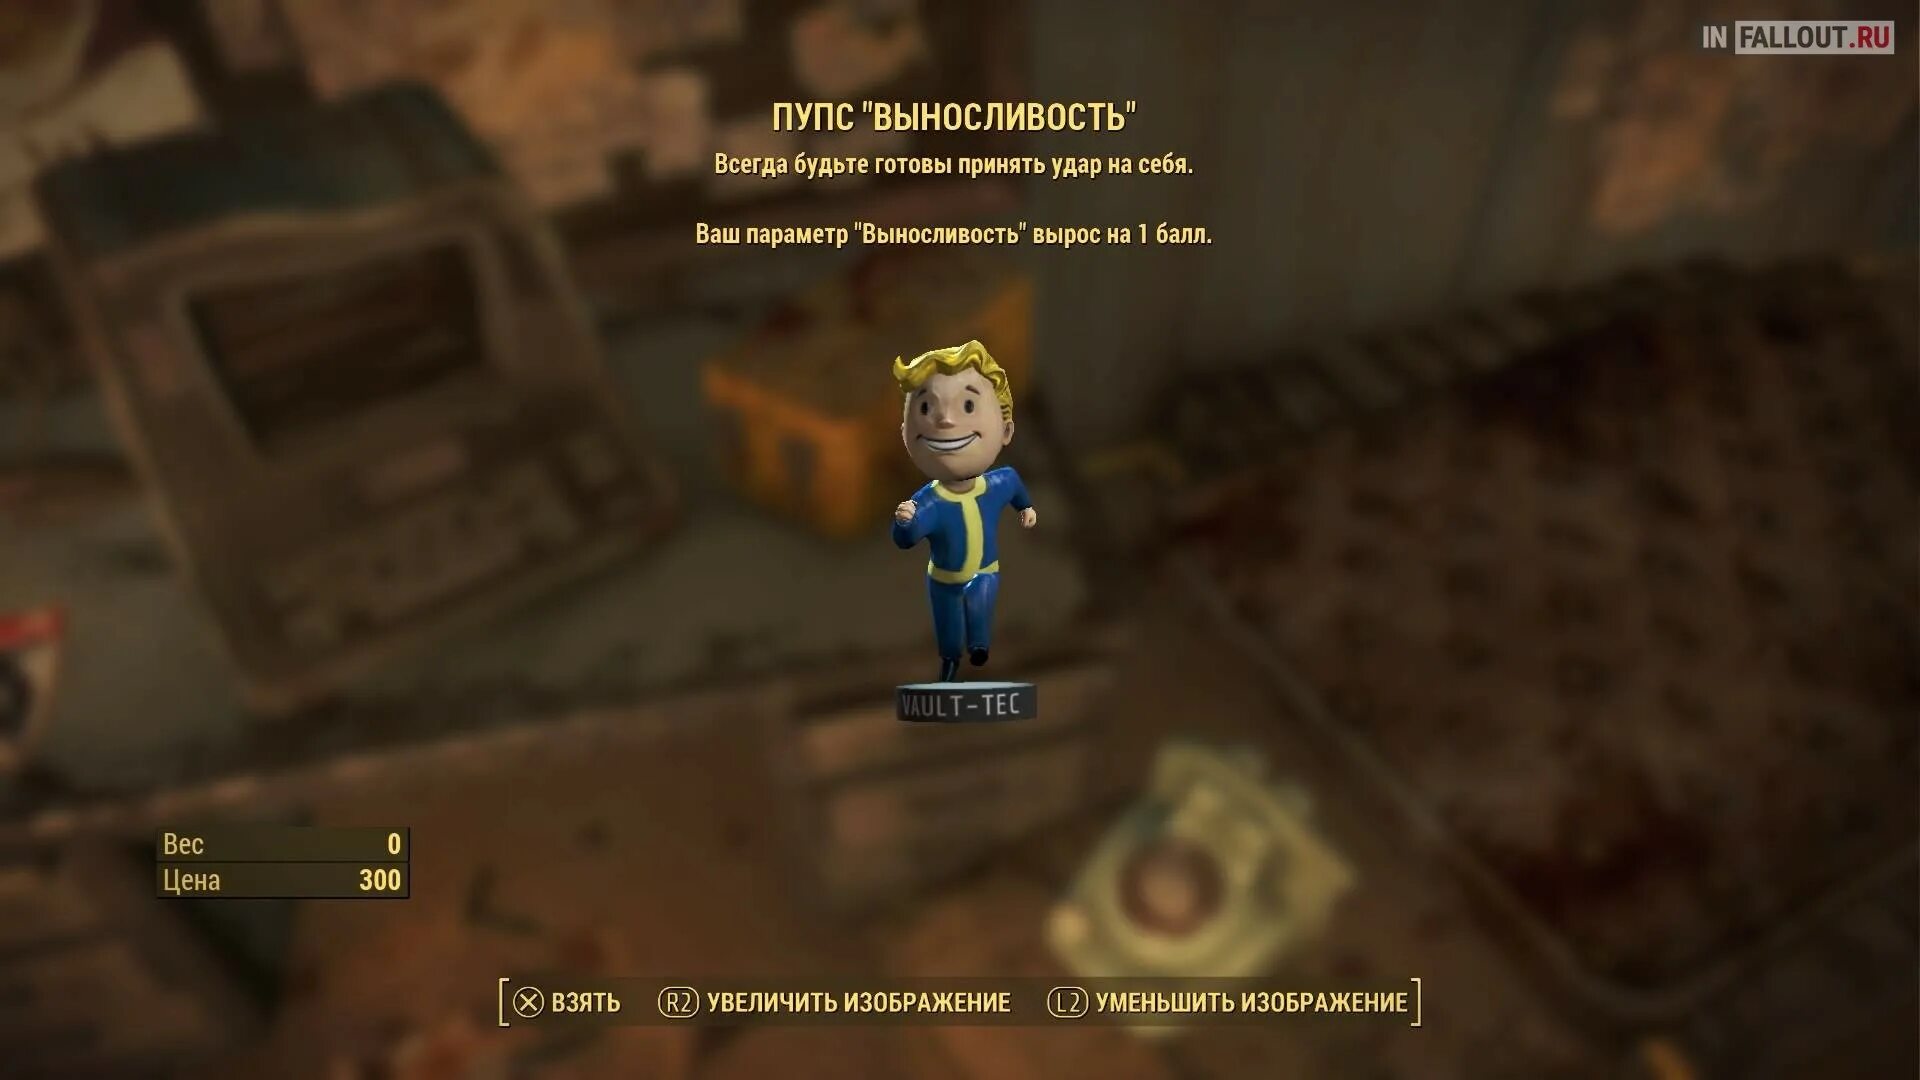 Где найти пупса. Пупс выносливость Fallout 4. Fallout 4 пупсы местонахождение. Пупс удача Fallout 4 местонахождение. Пупс ловкость Fallout 4 местонахождение.